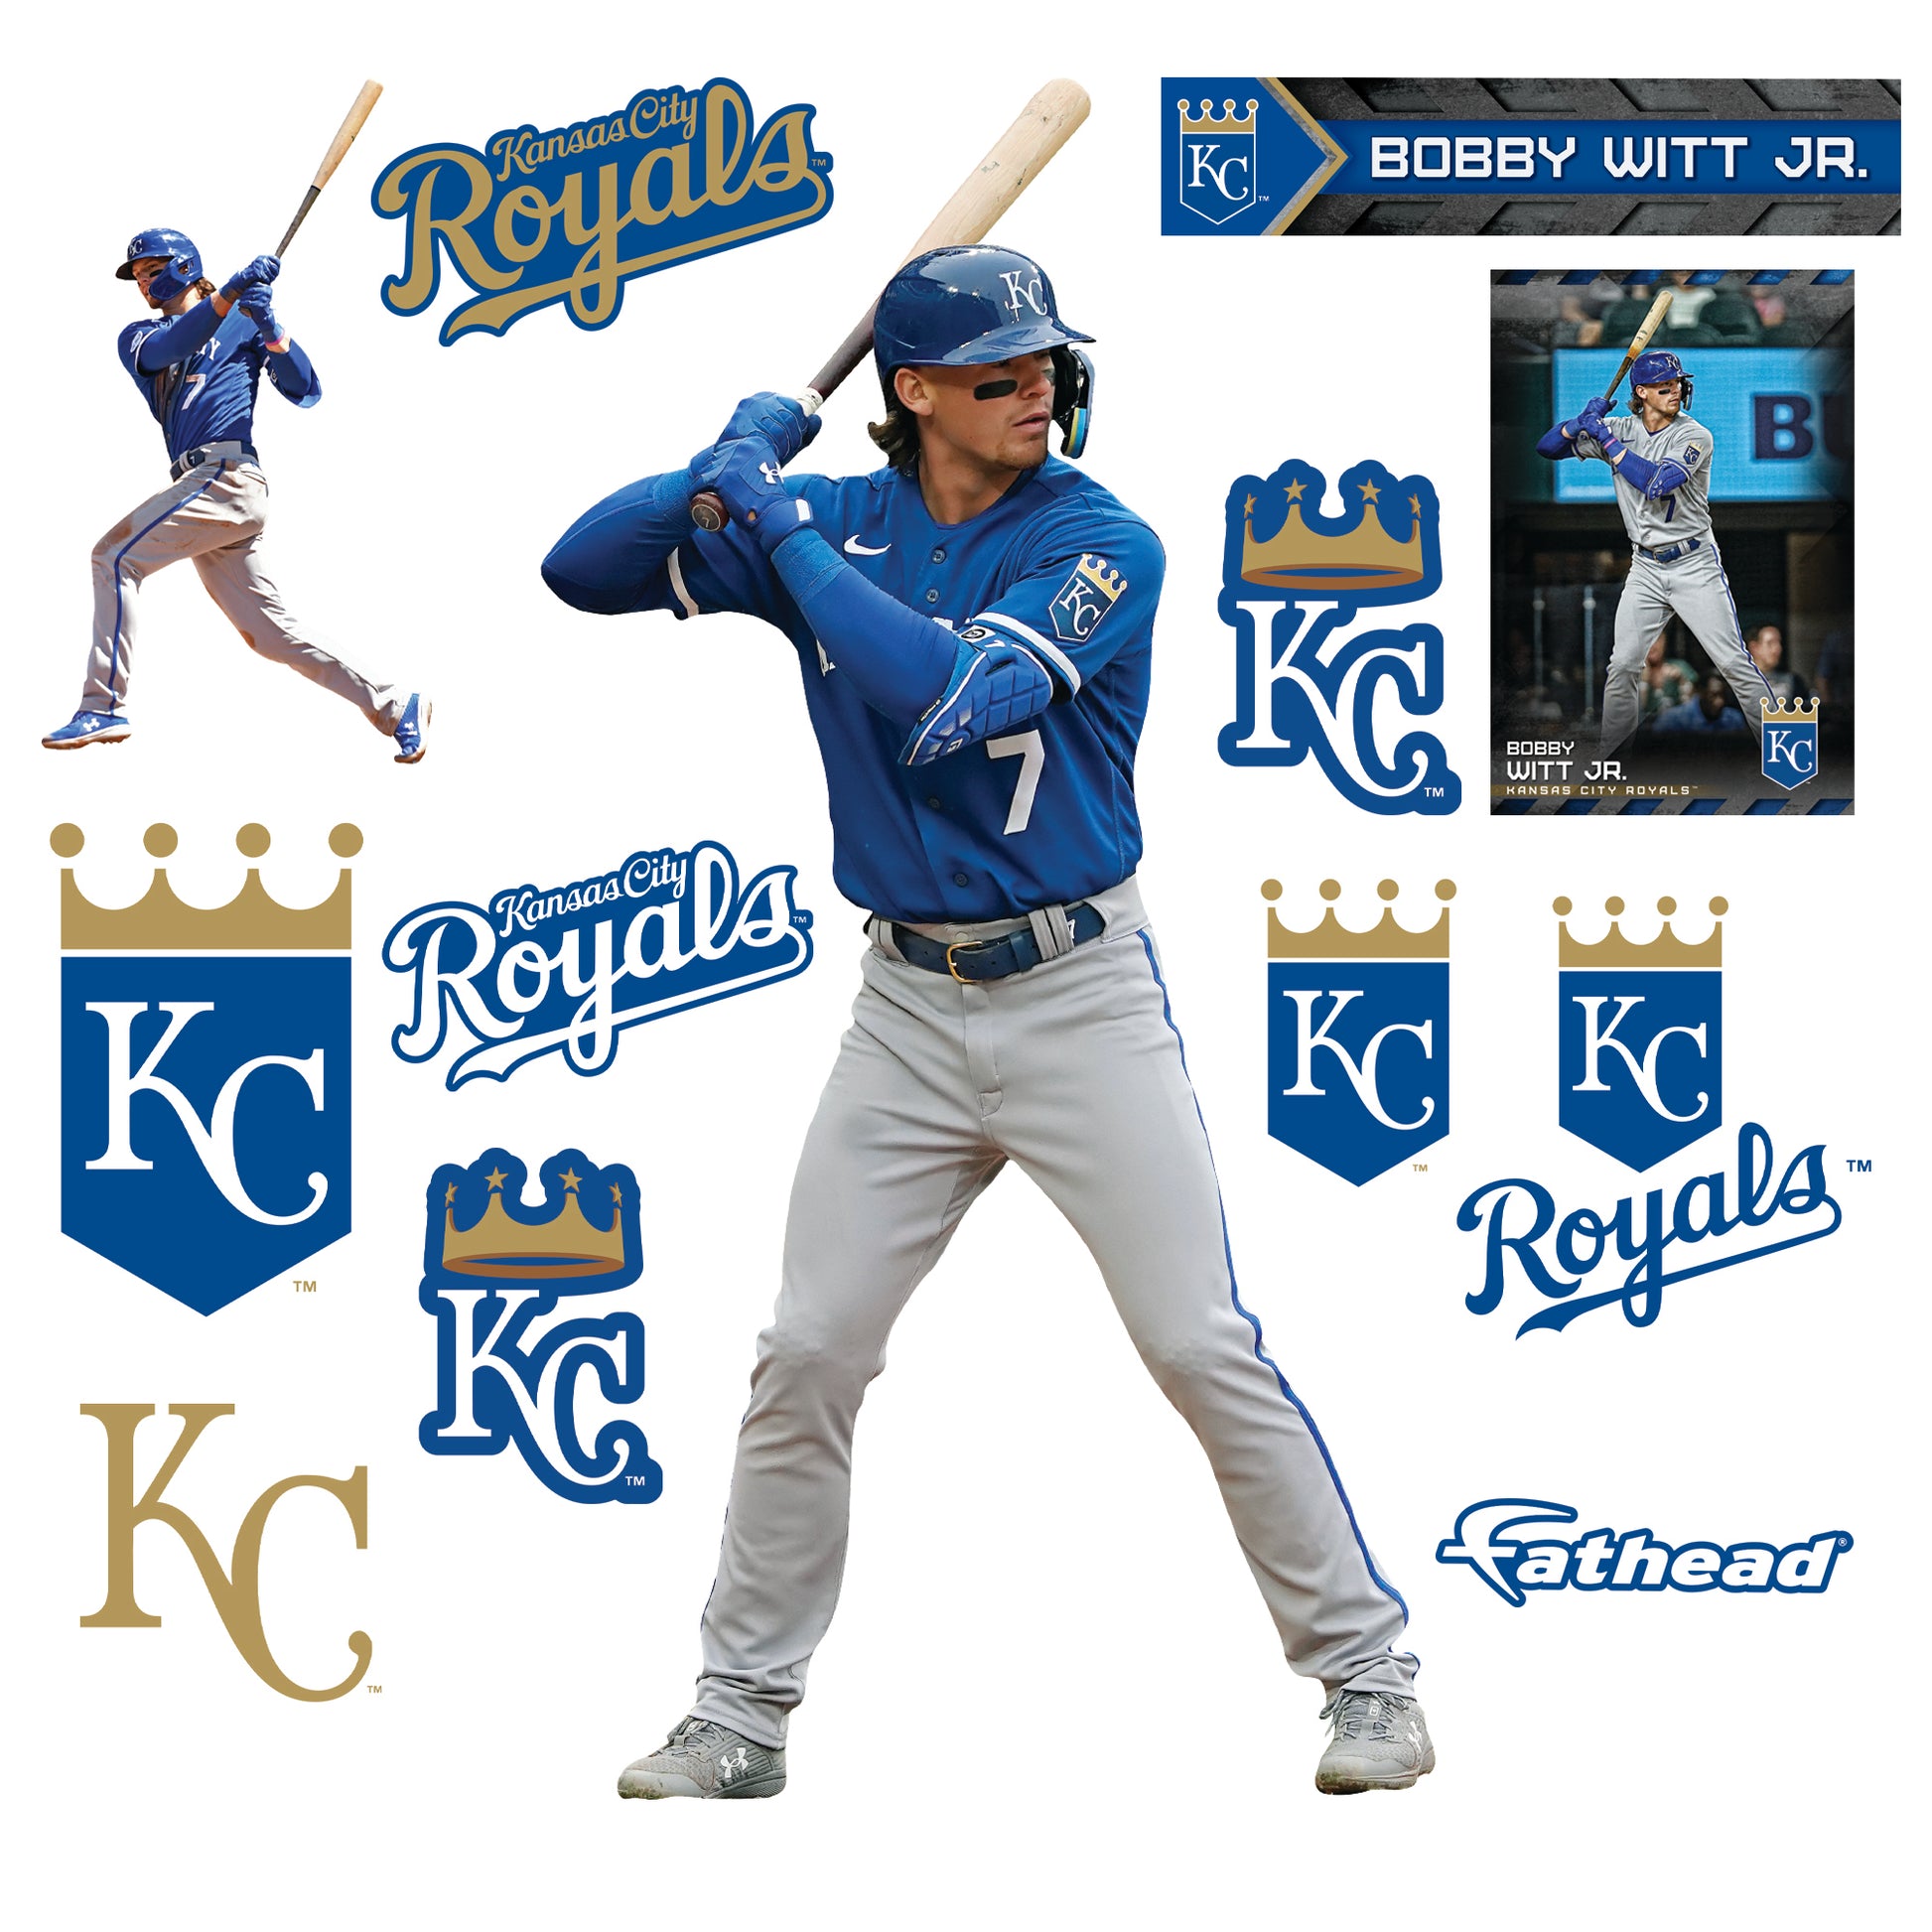 Kansas City Royals: Bobby Witt Jr. 2022 Batting - Officially